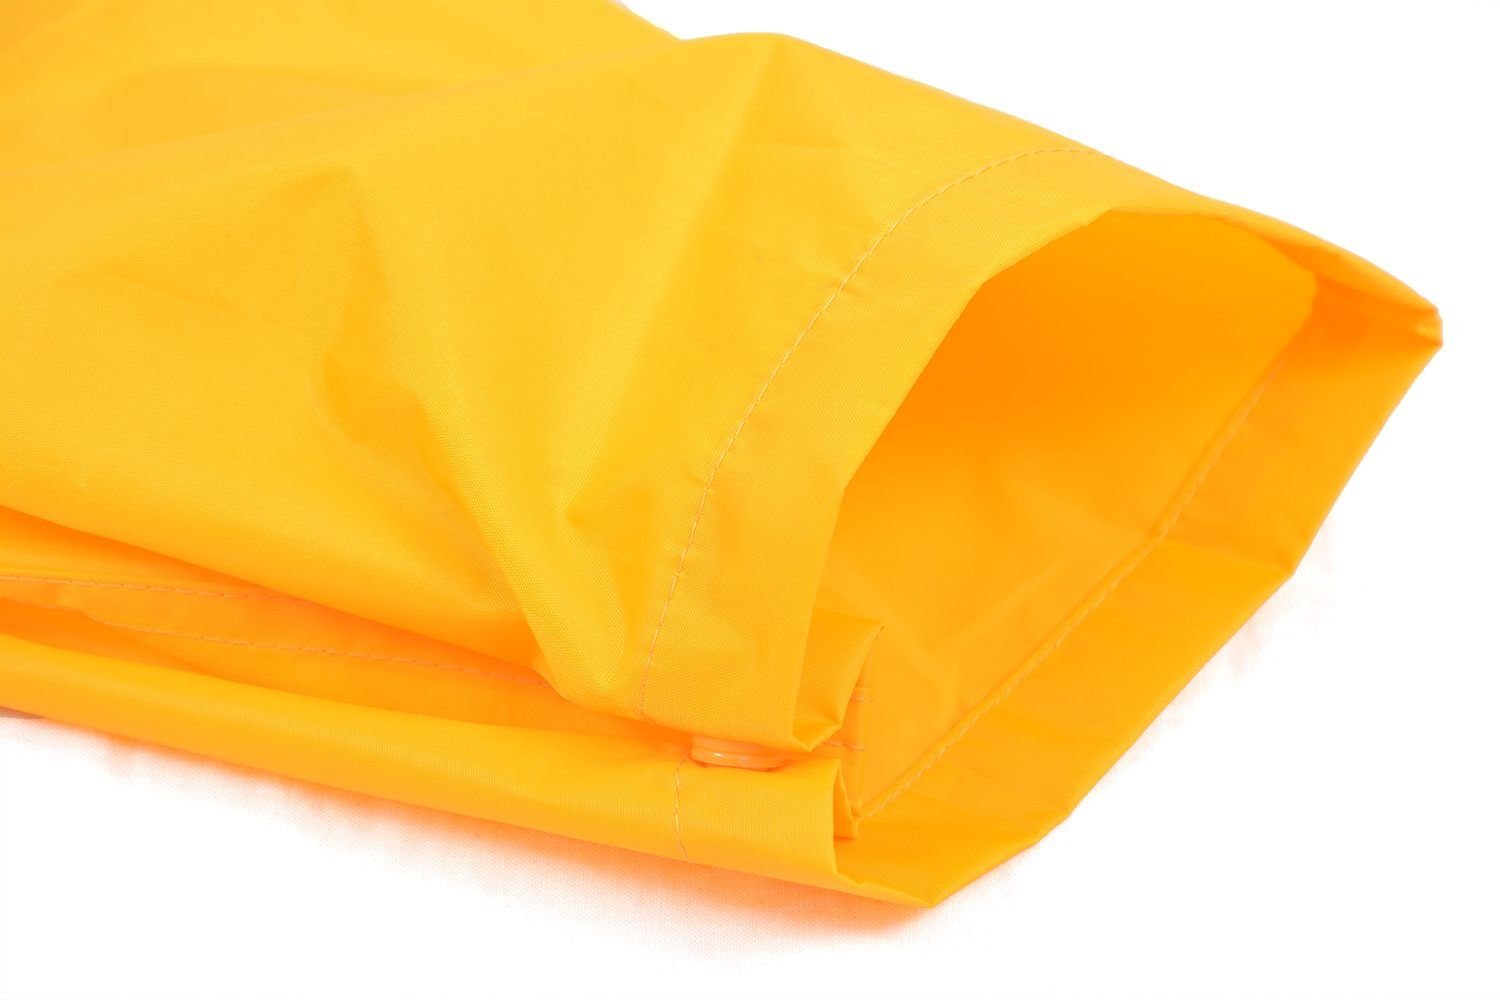 DRY KIDS Regenanzug Regenanzug-Set, reflektierende (1-tlg), Kinder Wasserdichtes Regenbekleidung Gelb